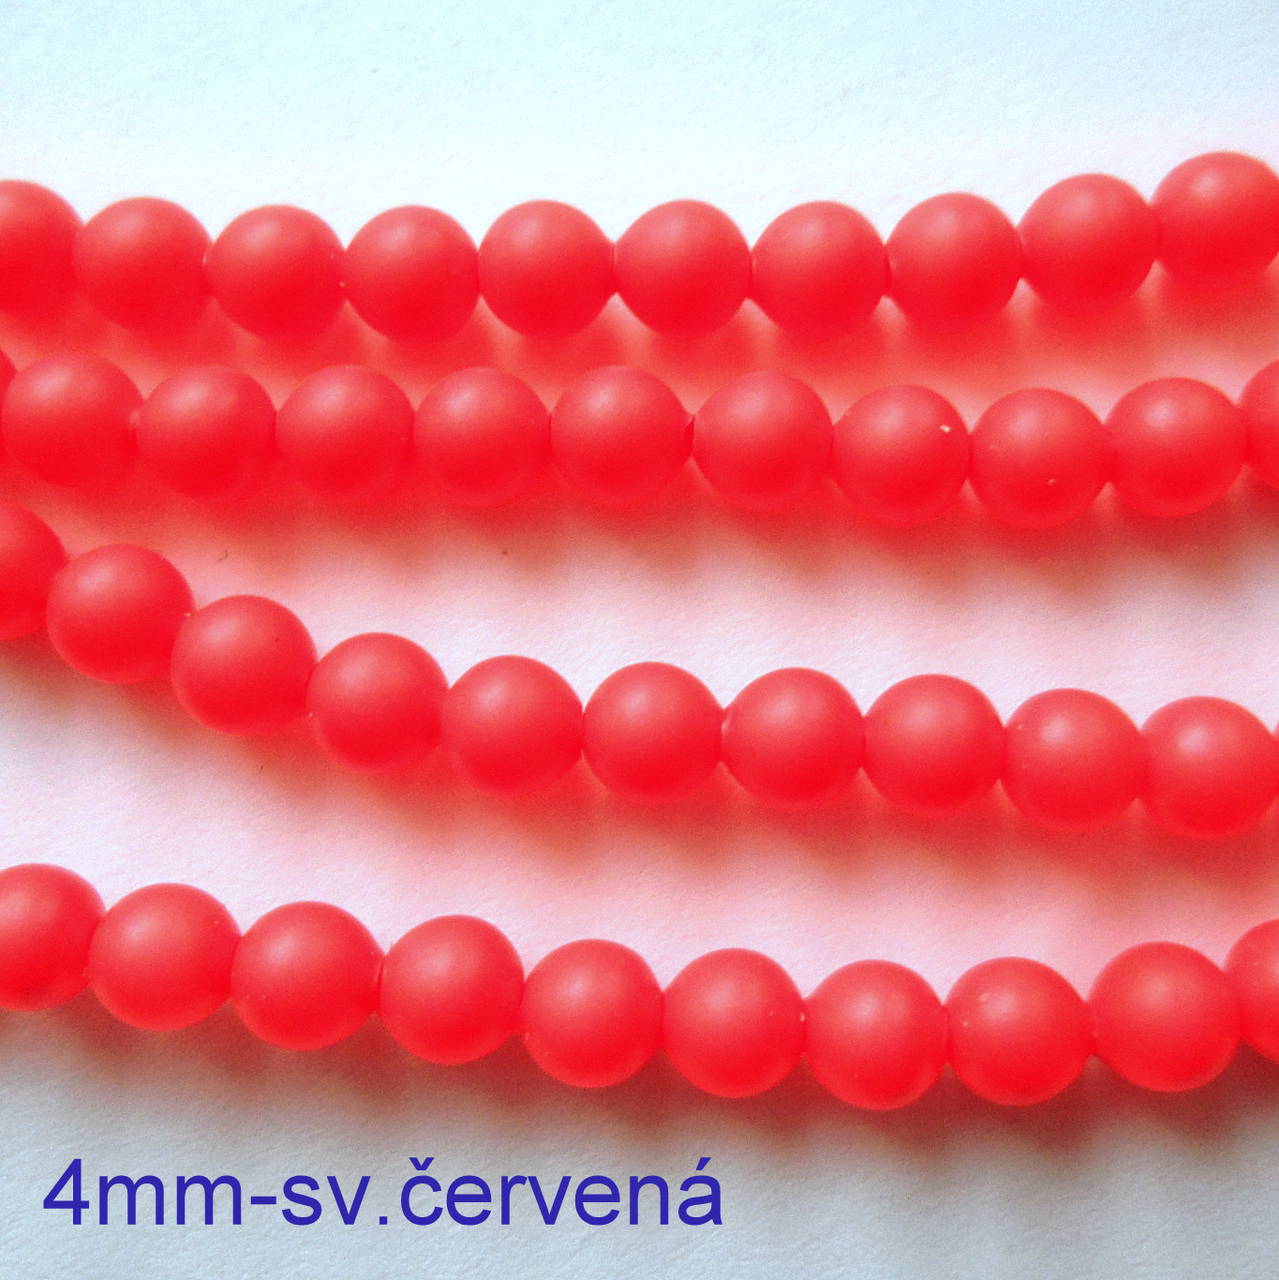 SWAROVSKI® perly 4mm-1ks (sv.červená)